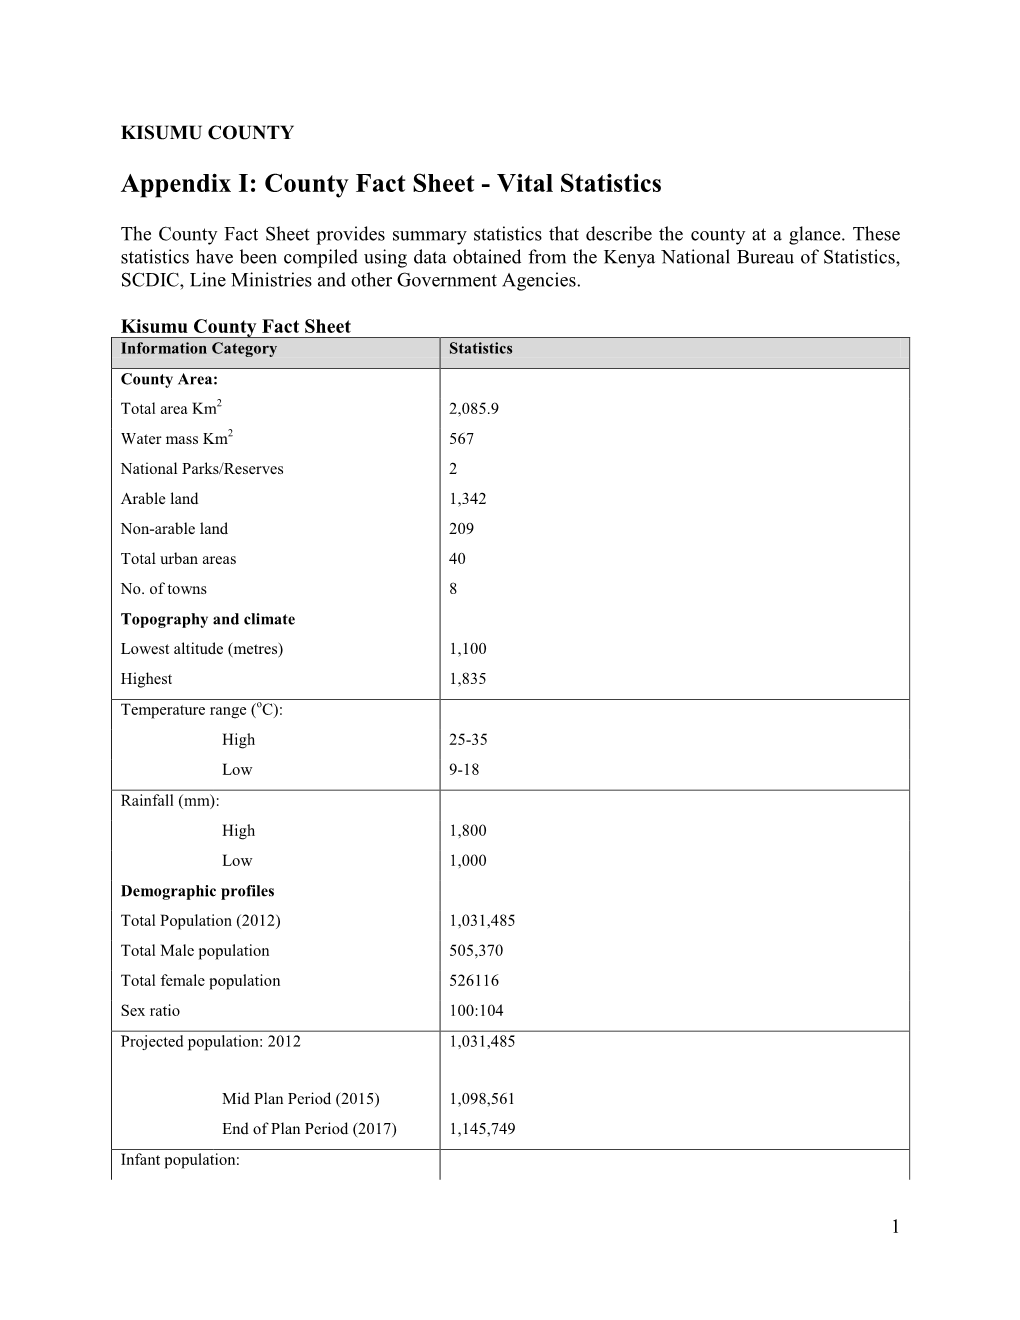 Appendix I: County Fact Sheet - Vital Statistics